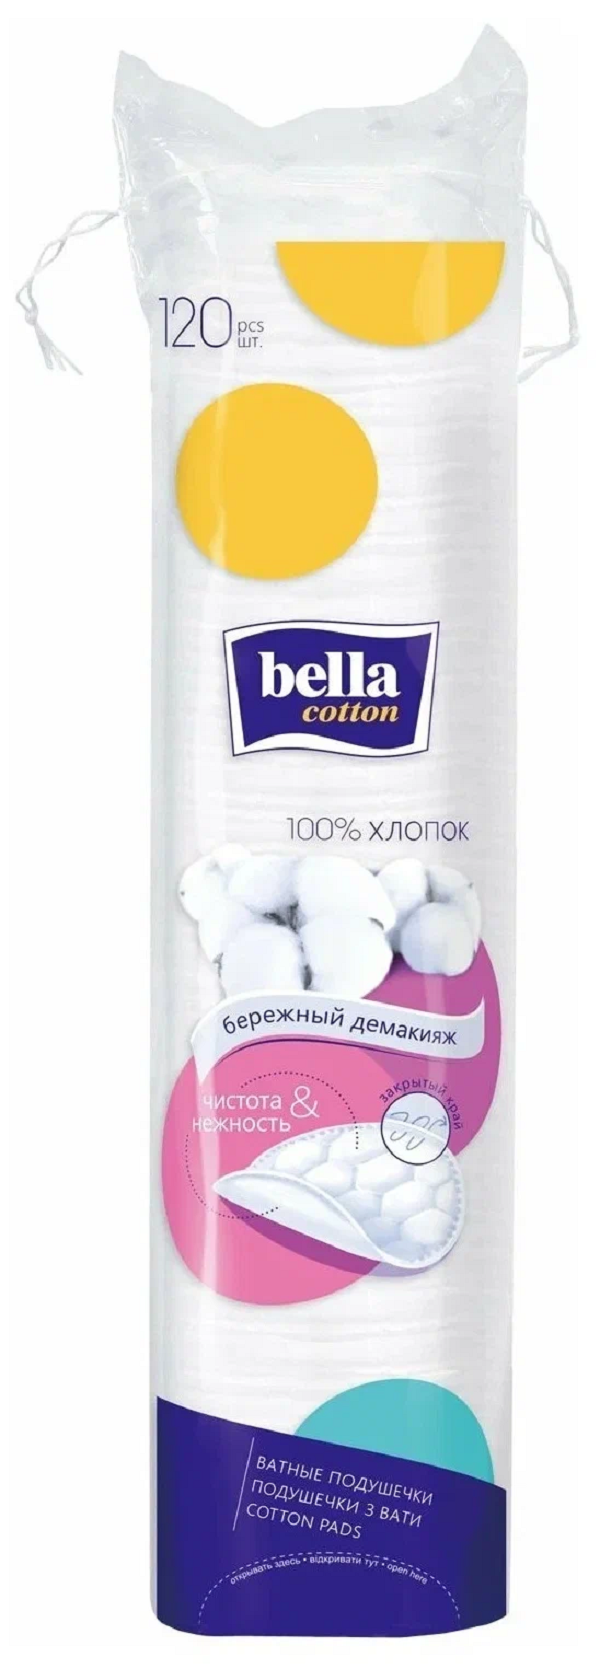 Диски ватные Bella Cotton хлопок, 120 шт. чистовье диски ватные хлопок cotto fleur 120 шт